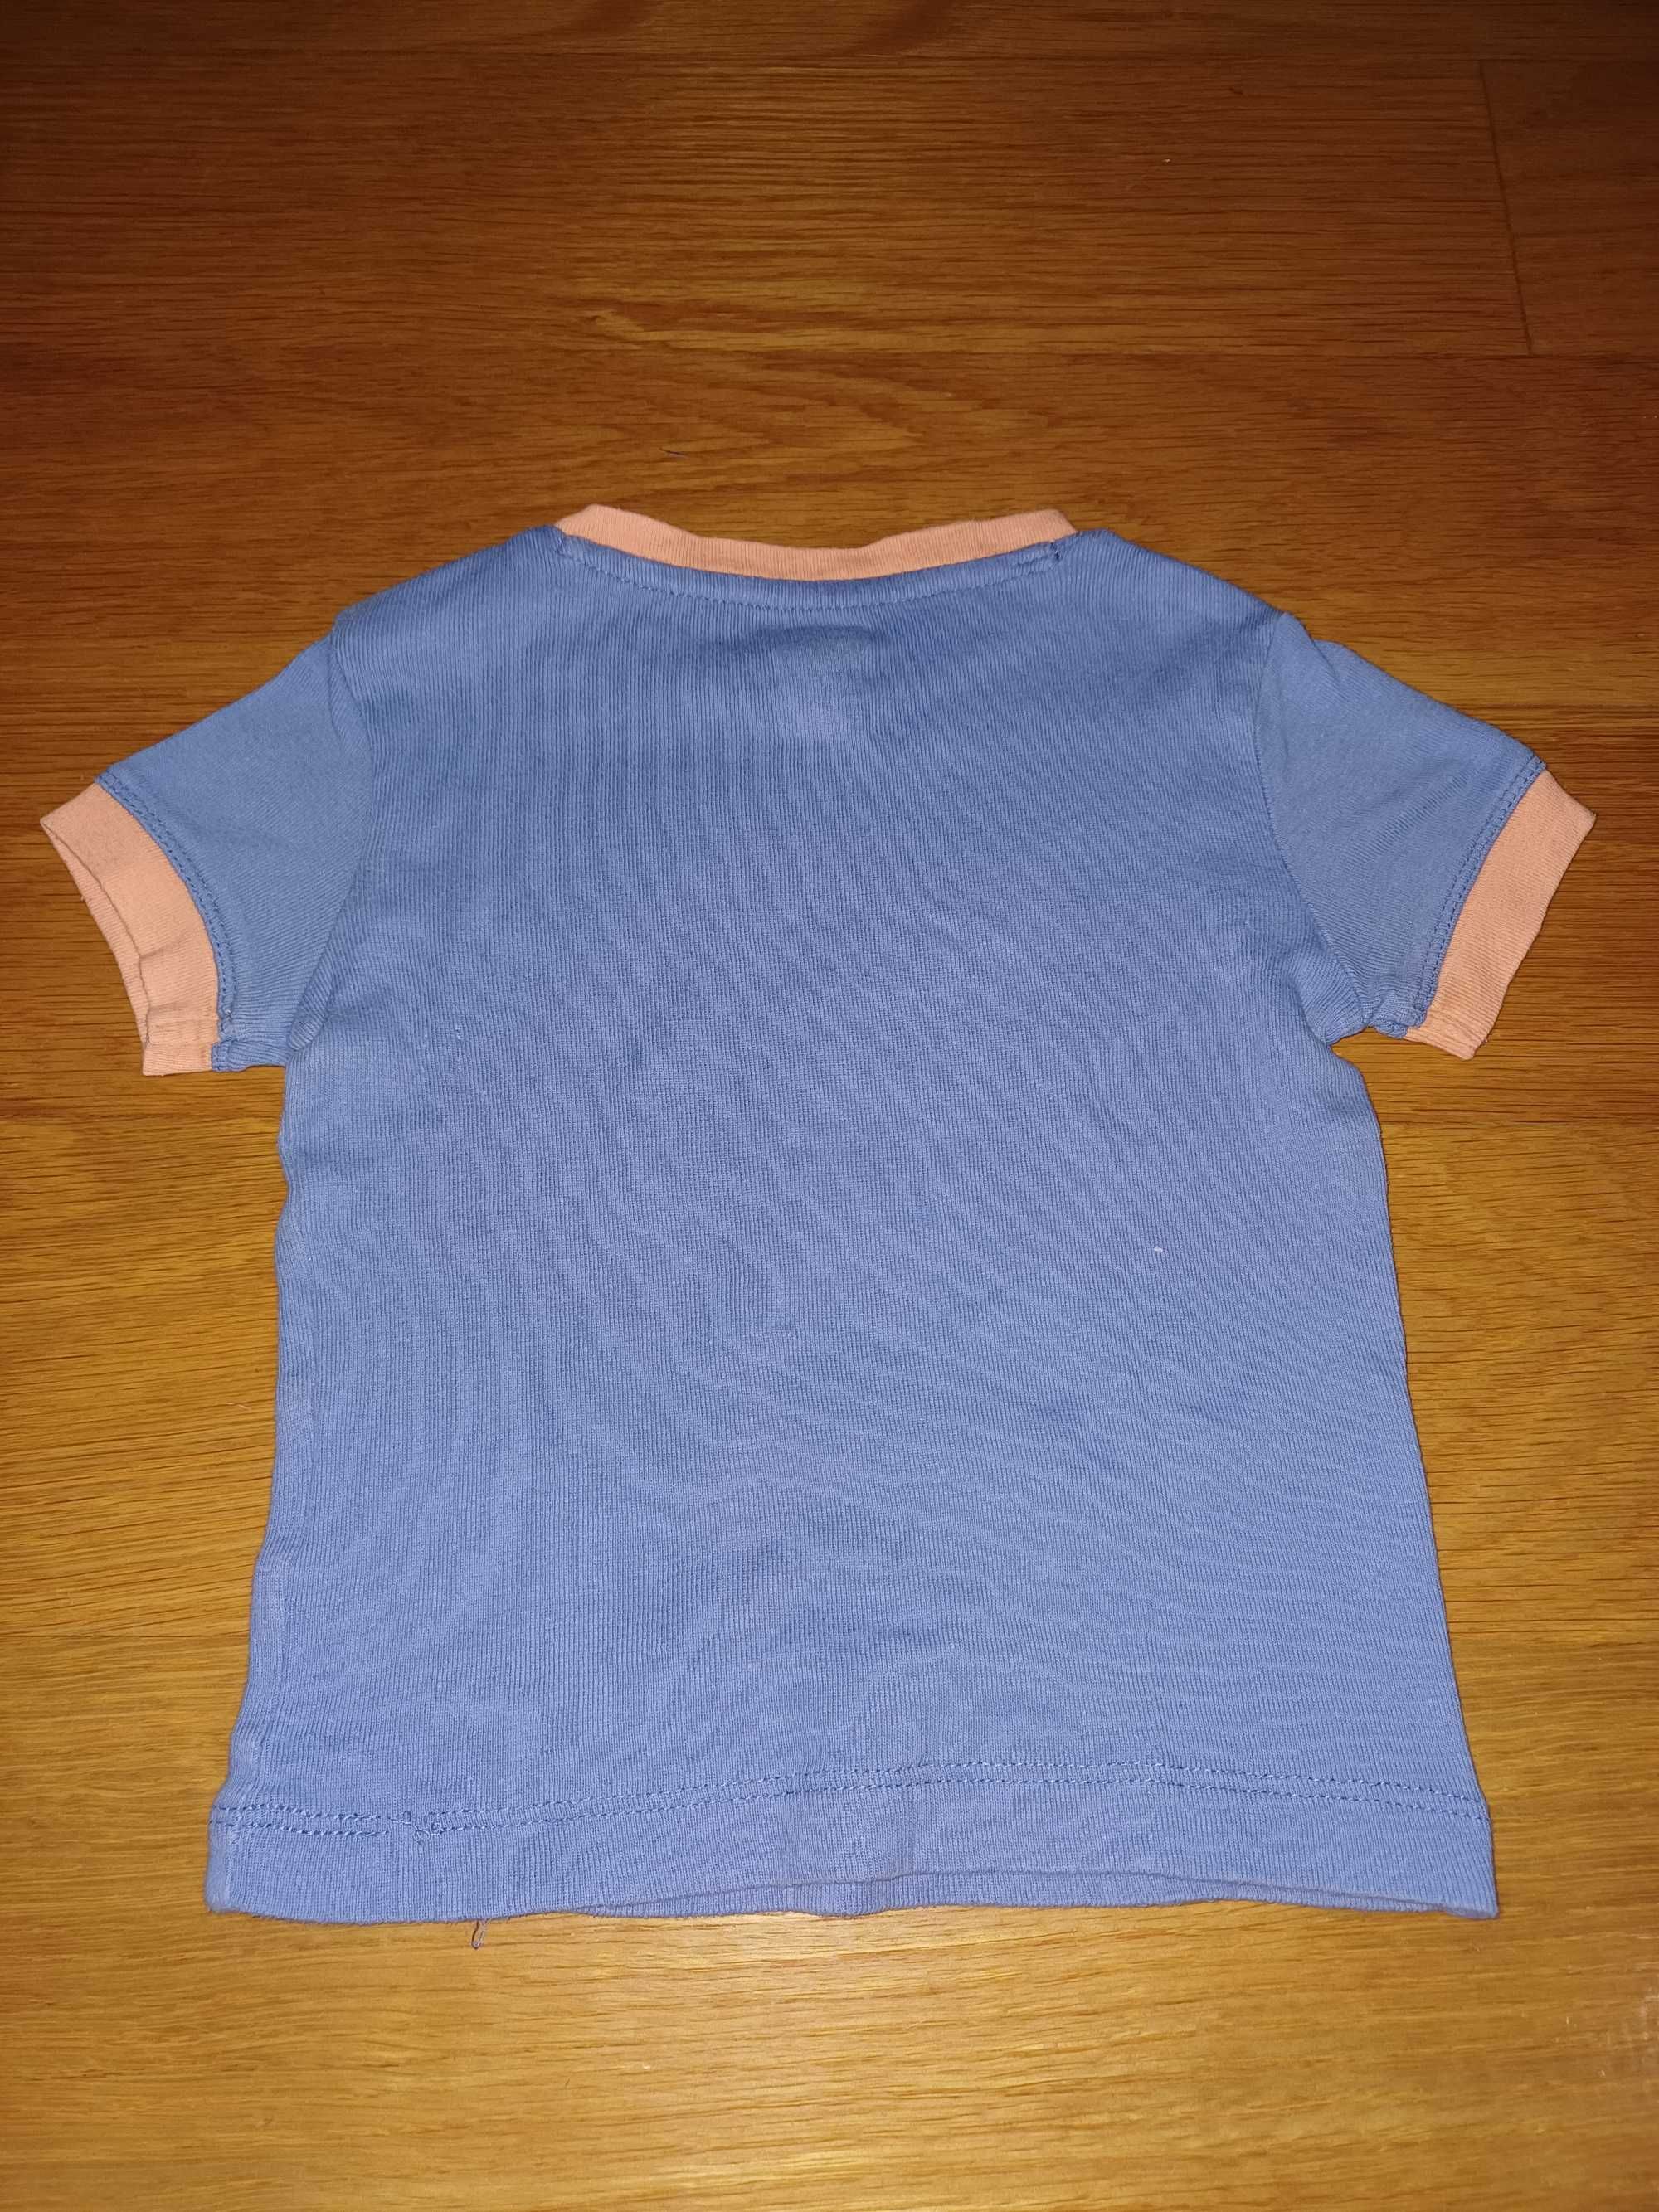 T-shirt zippy para menino